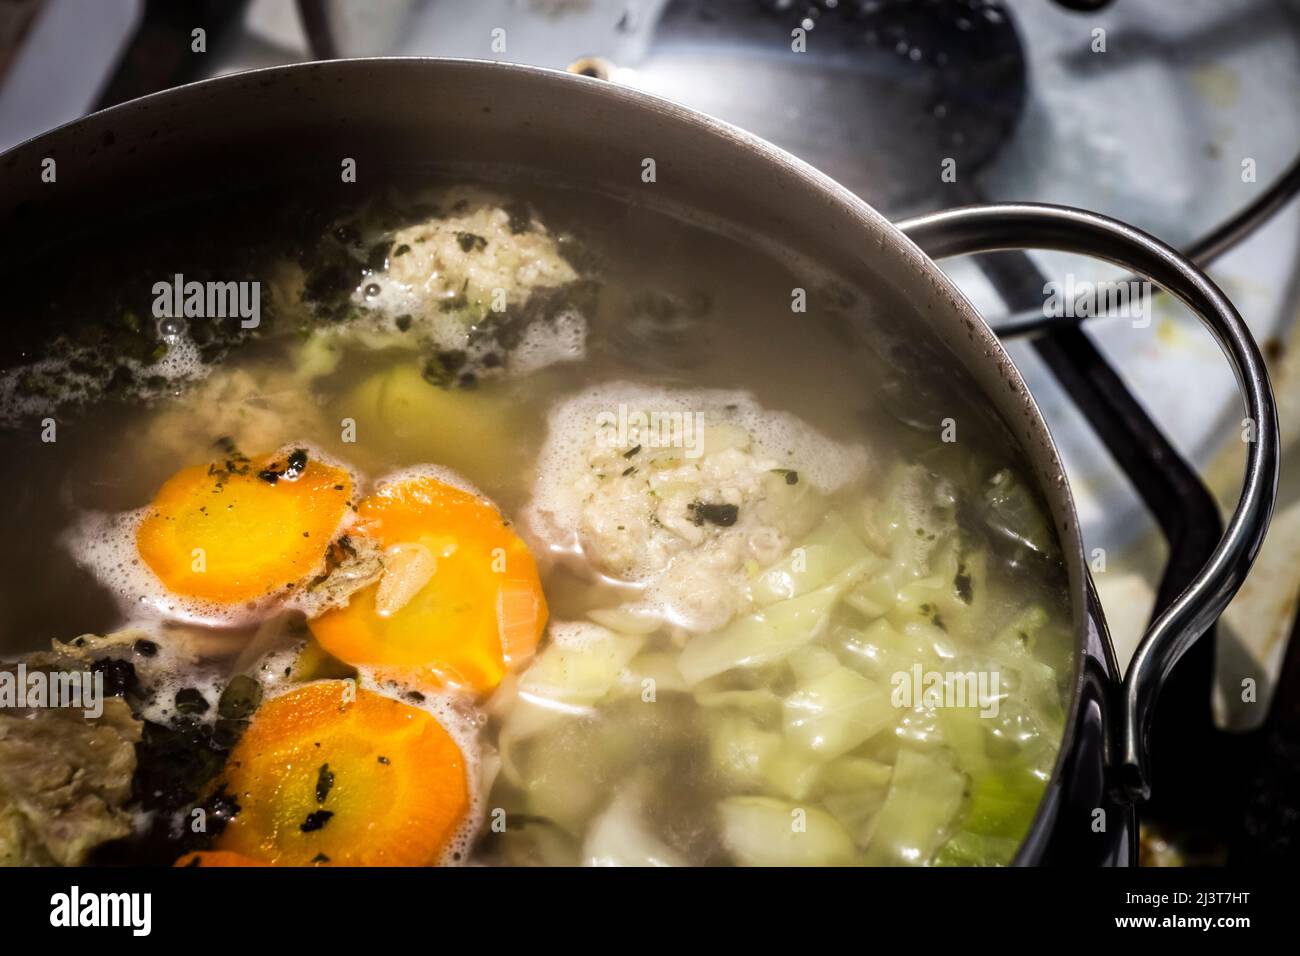 La soupe est cuite sur la cuisinière pendant la cuisson dans une grande casserole. Banque D'Images